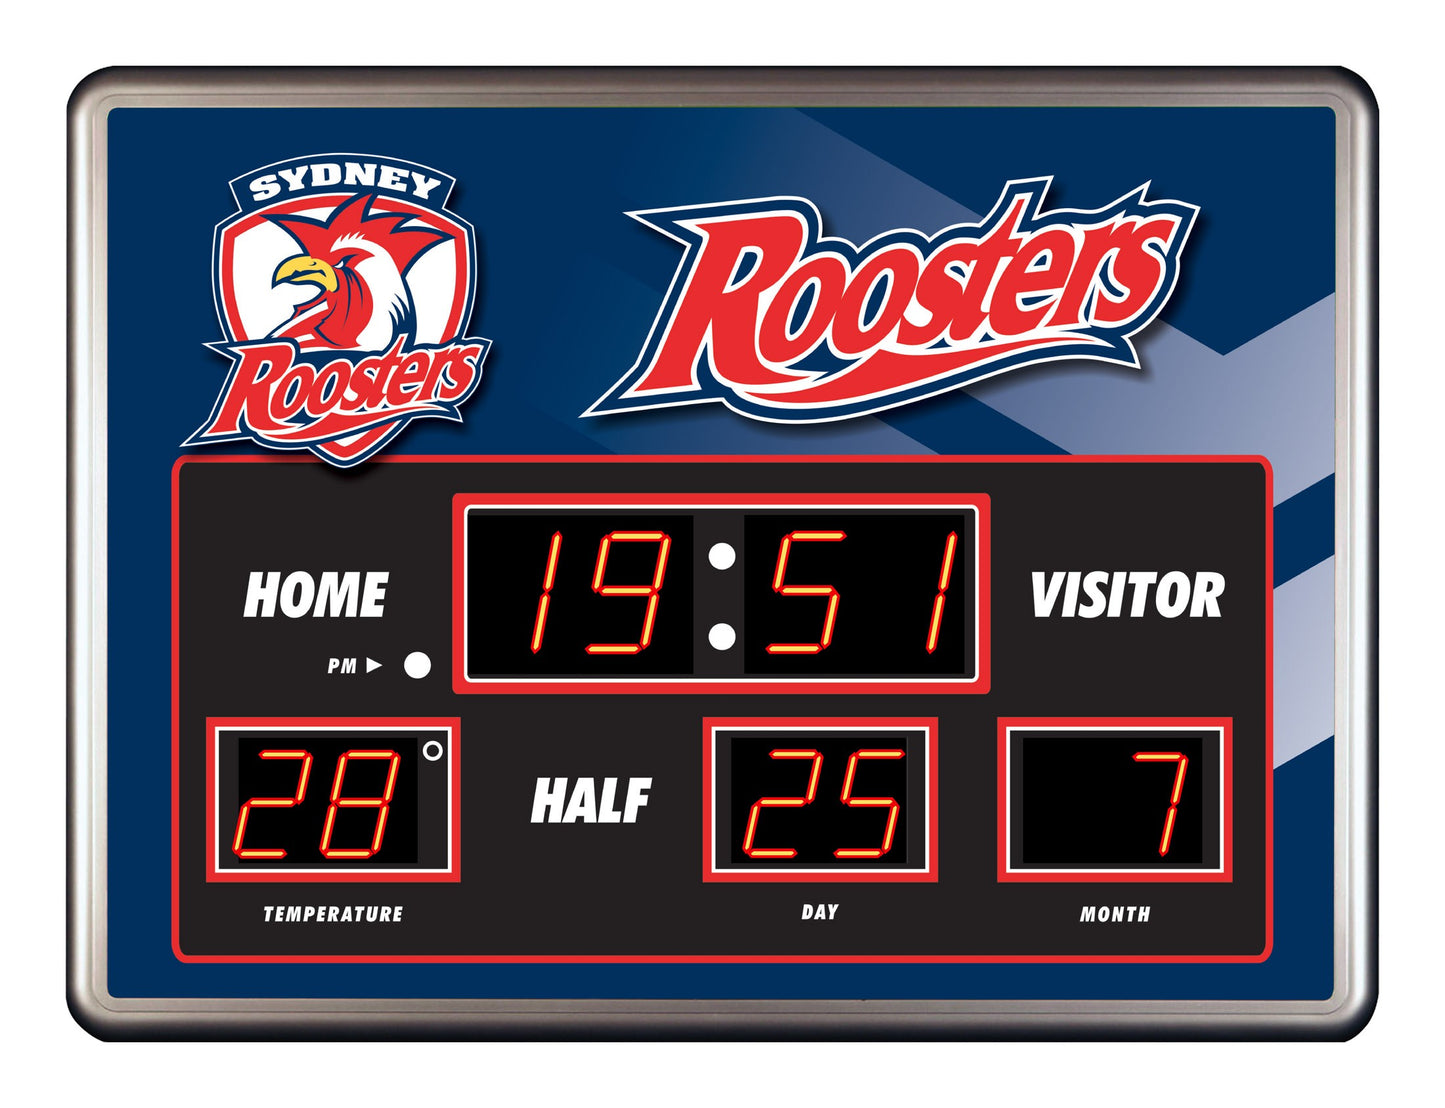 Roosters Scoreboard Clock